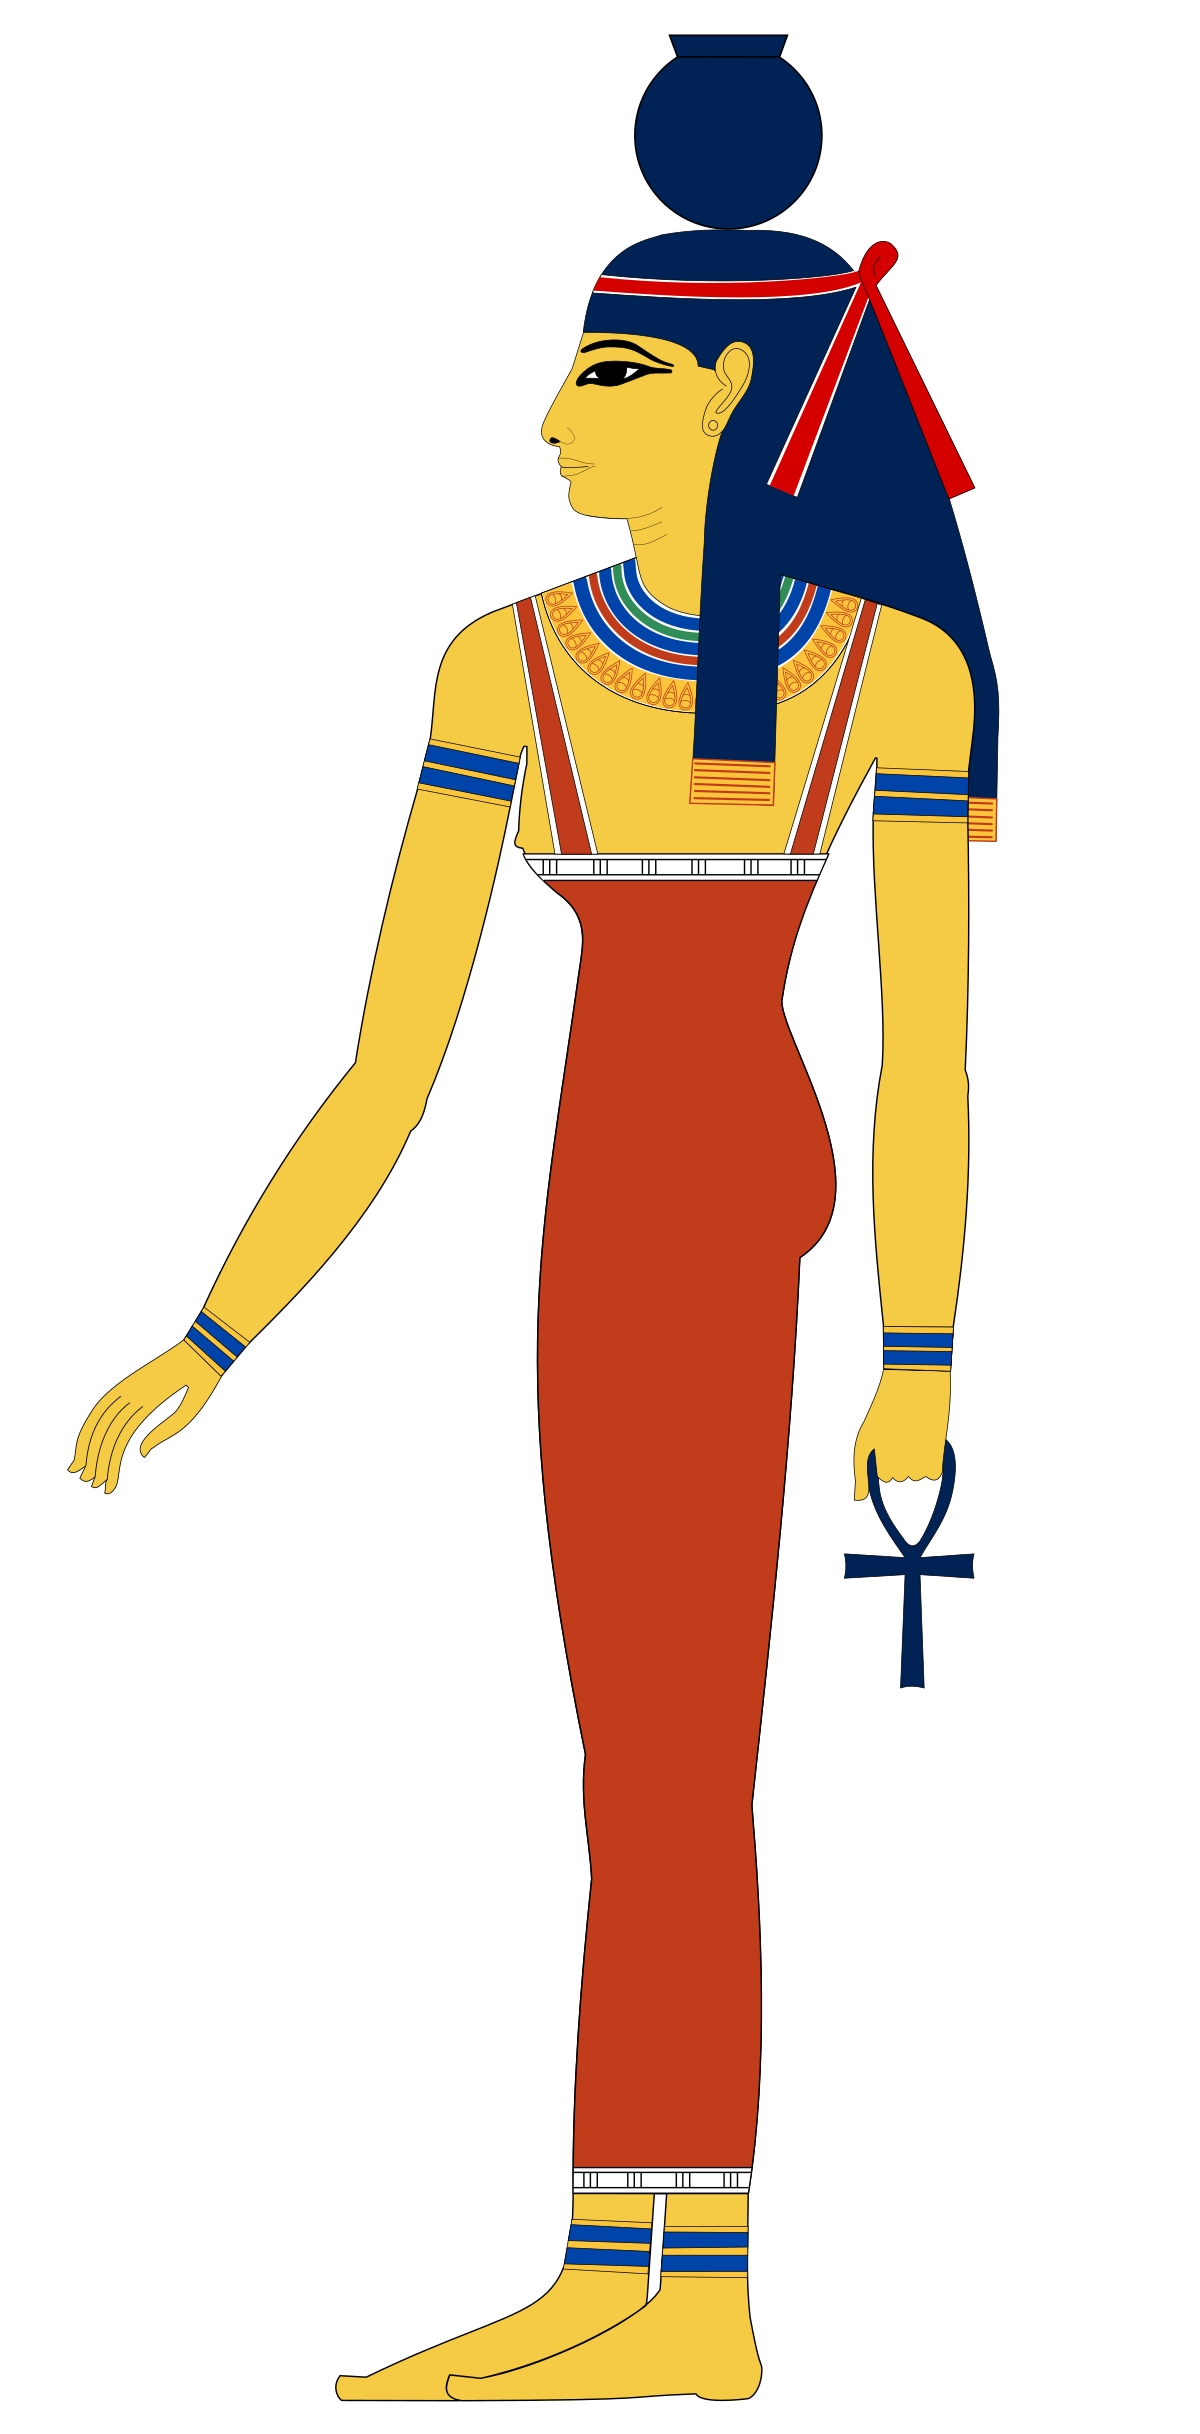 الجوز - آلهة السماء المصرية